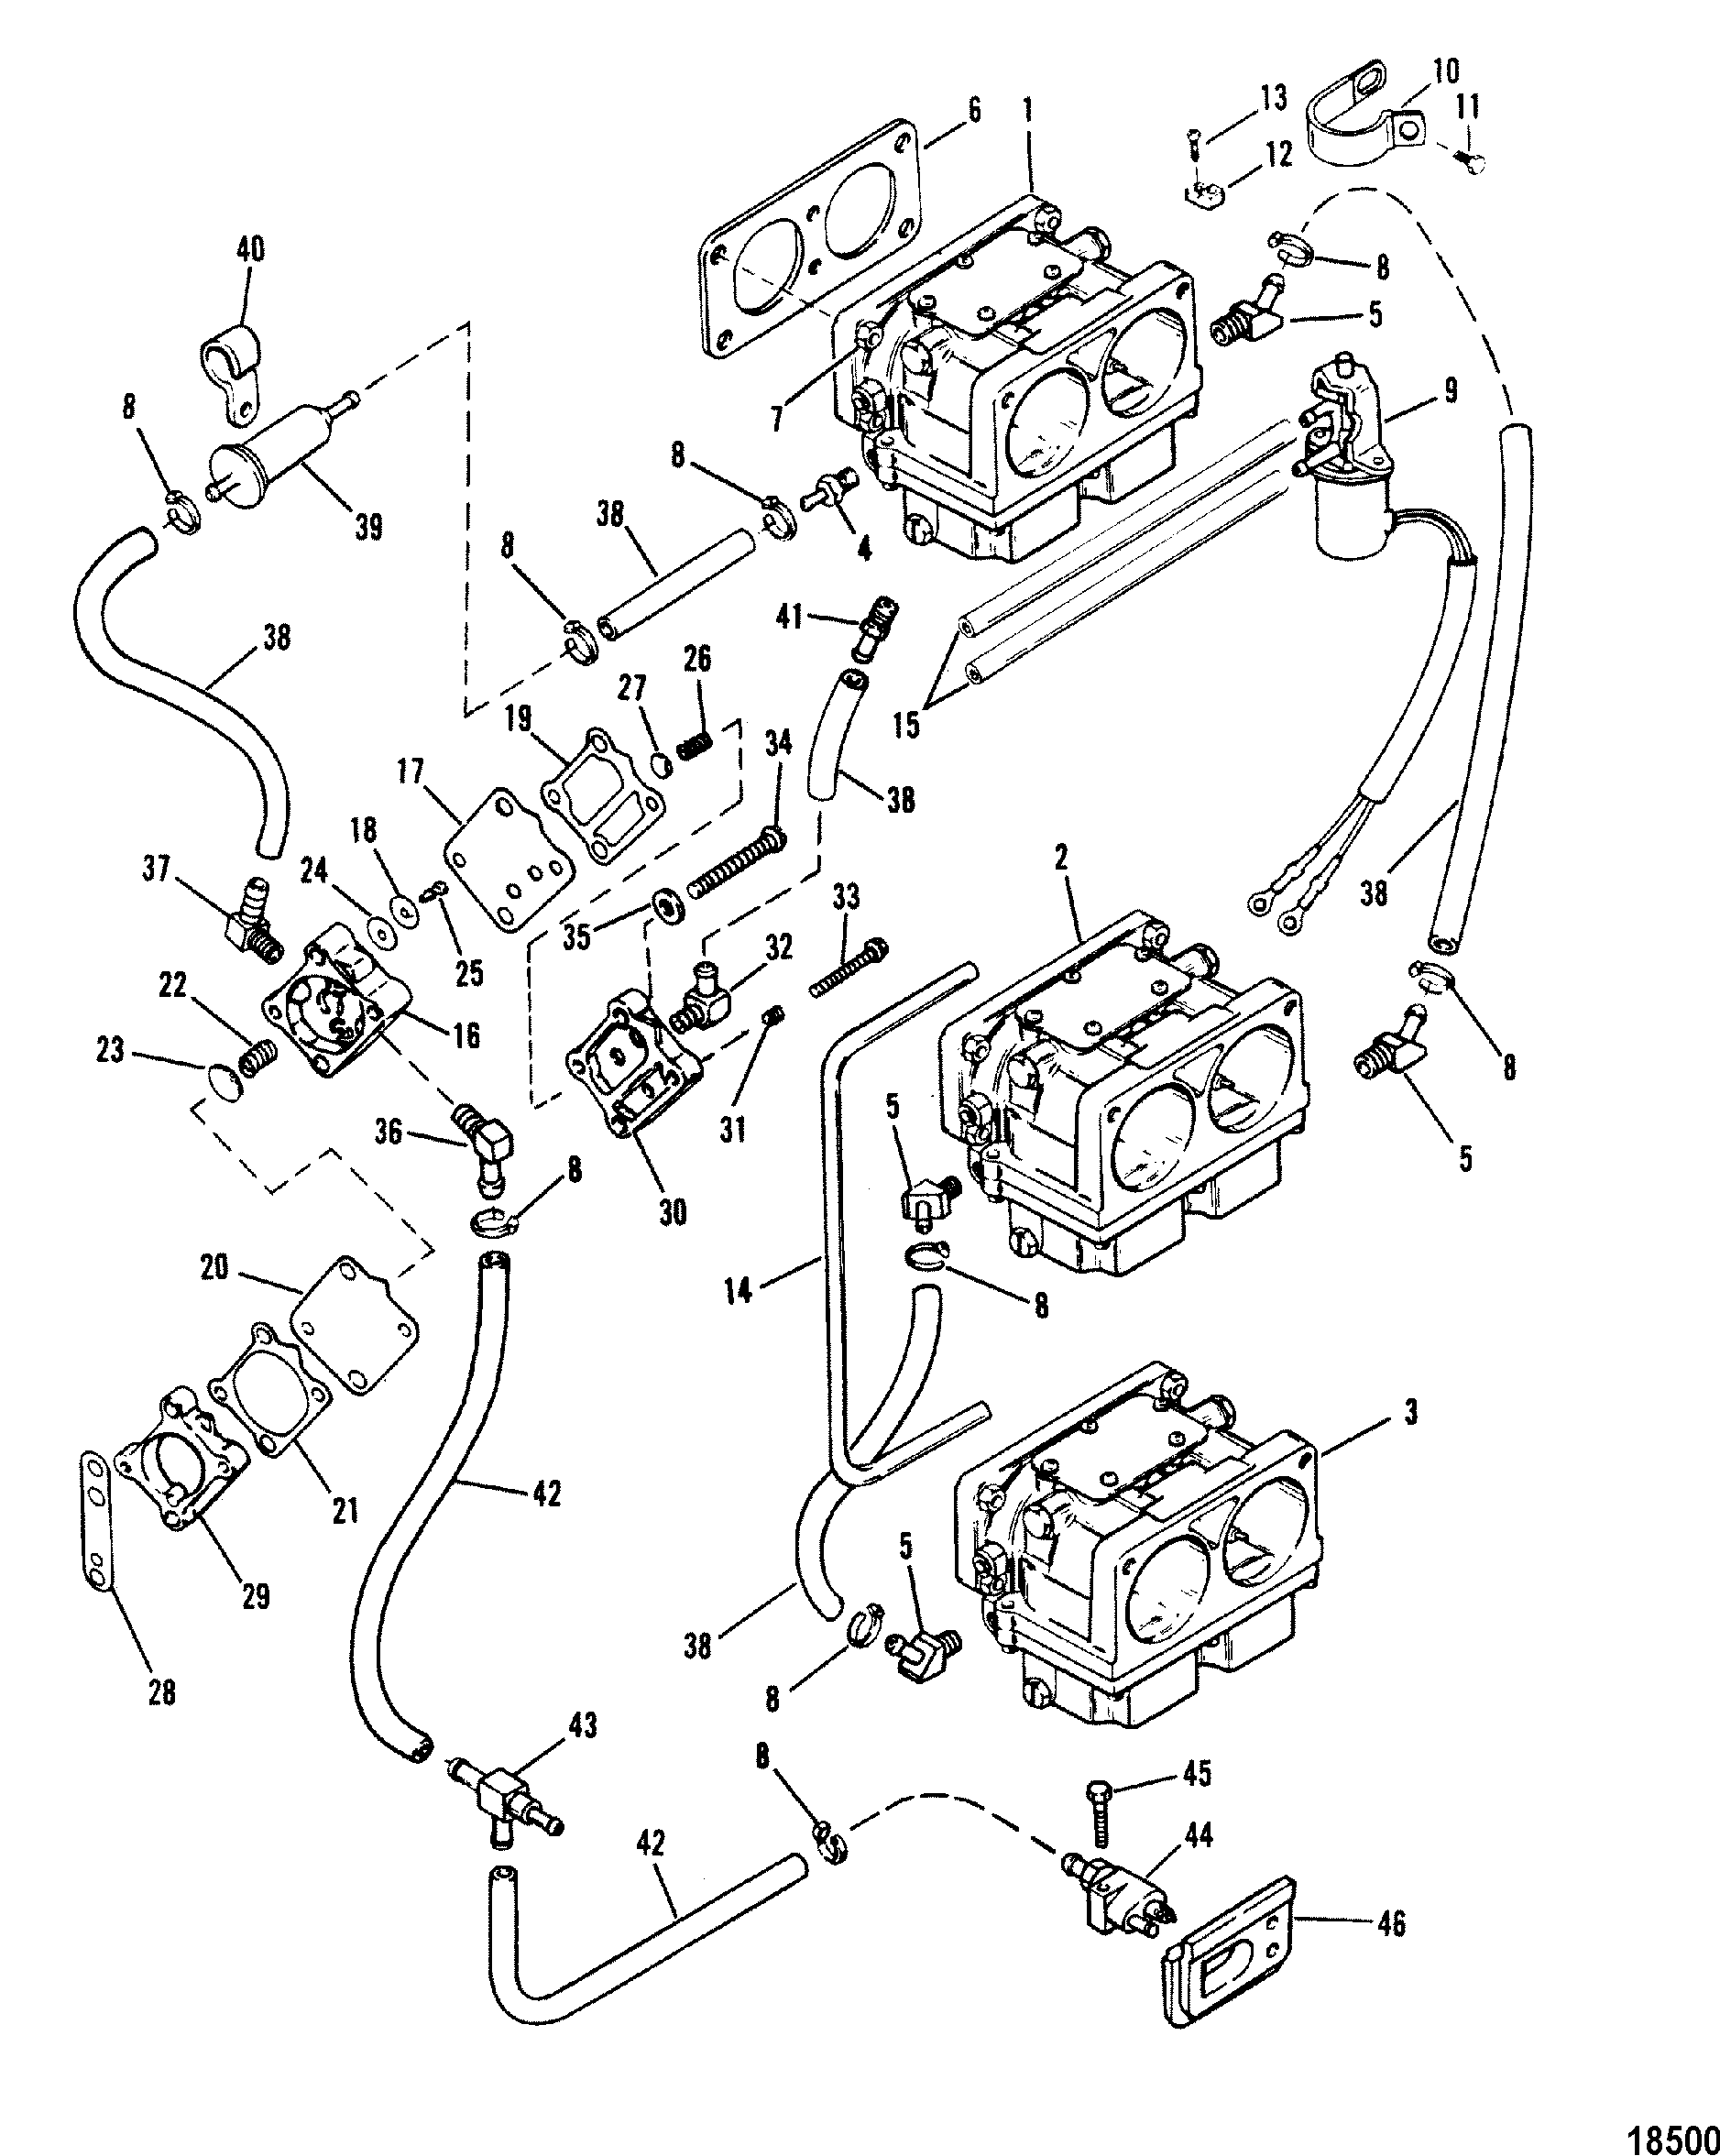 Fuel Pump and Carburetor